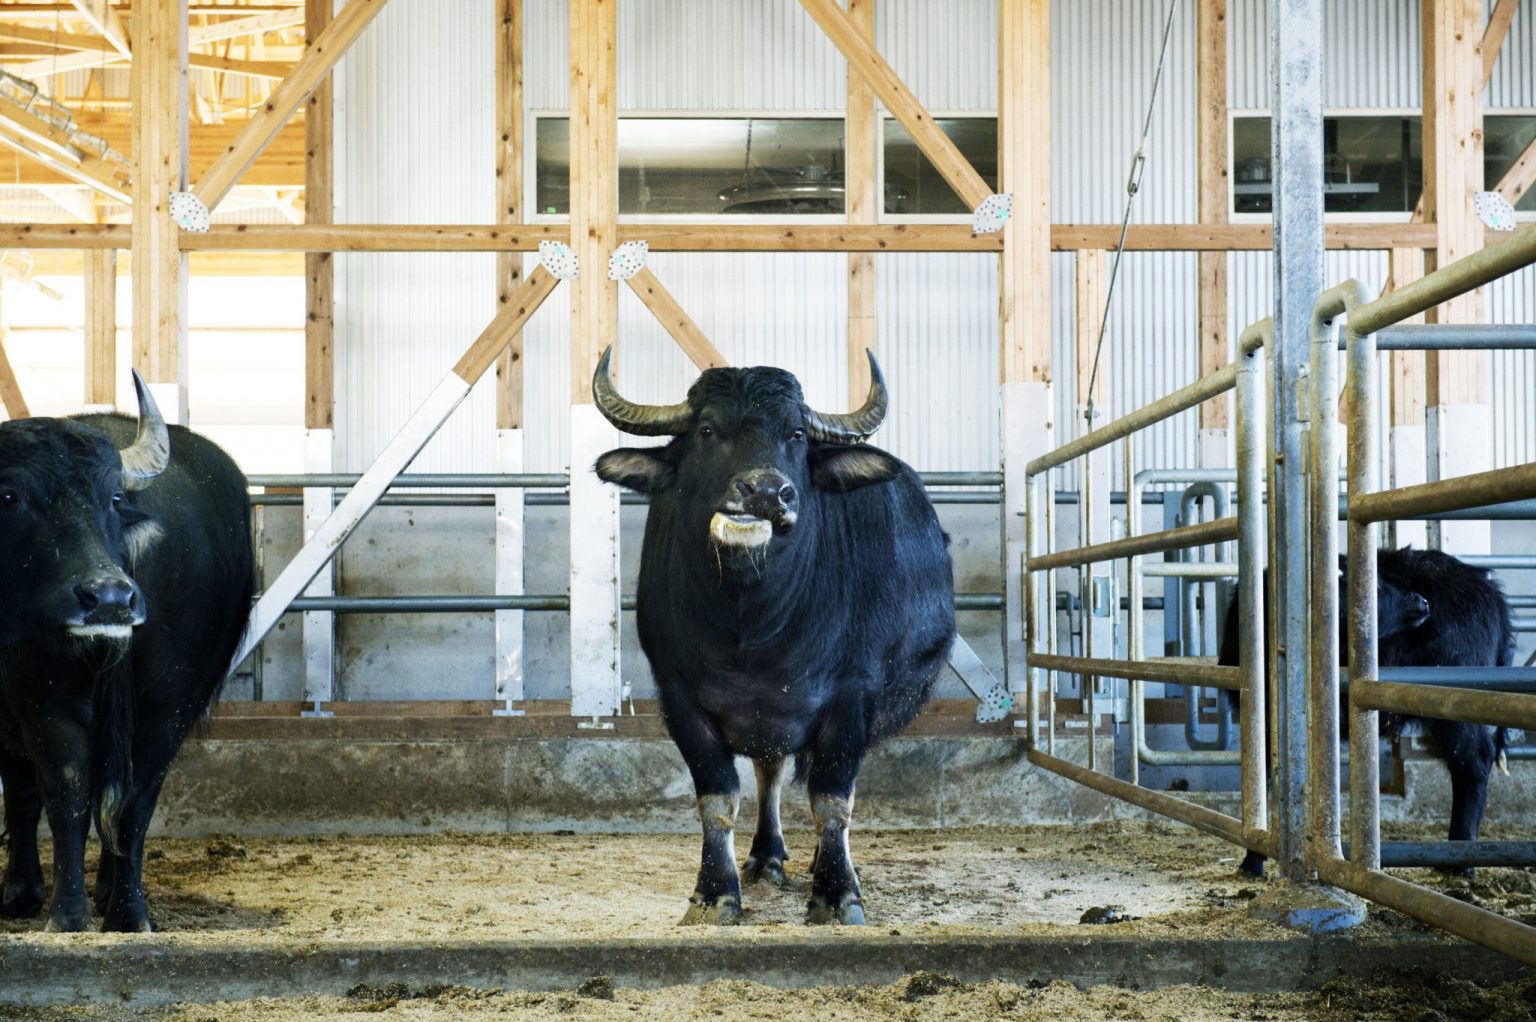 優しい表情が印象的な水牛は29頭。水牛舎の見学ツアー（2,000円）も人気。